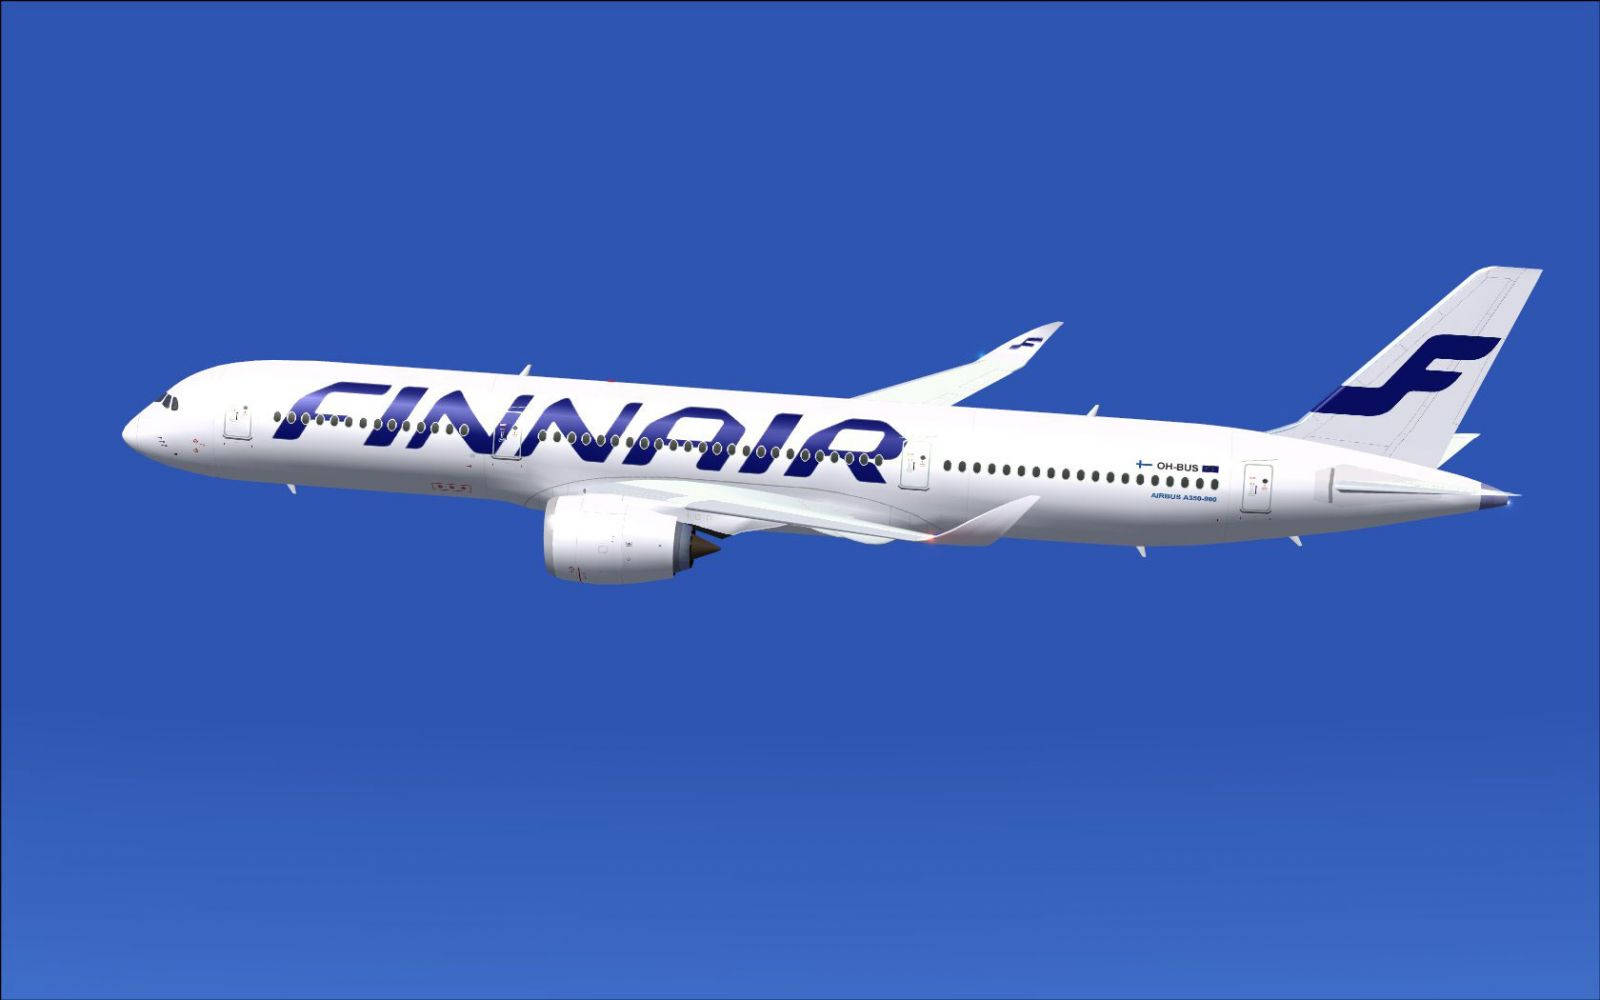 Finnair 1600 X 1000 Wallpaper